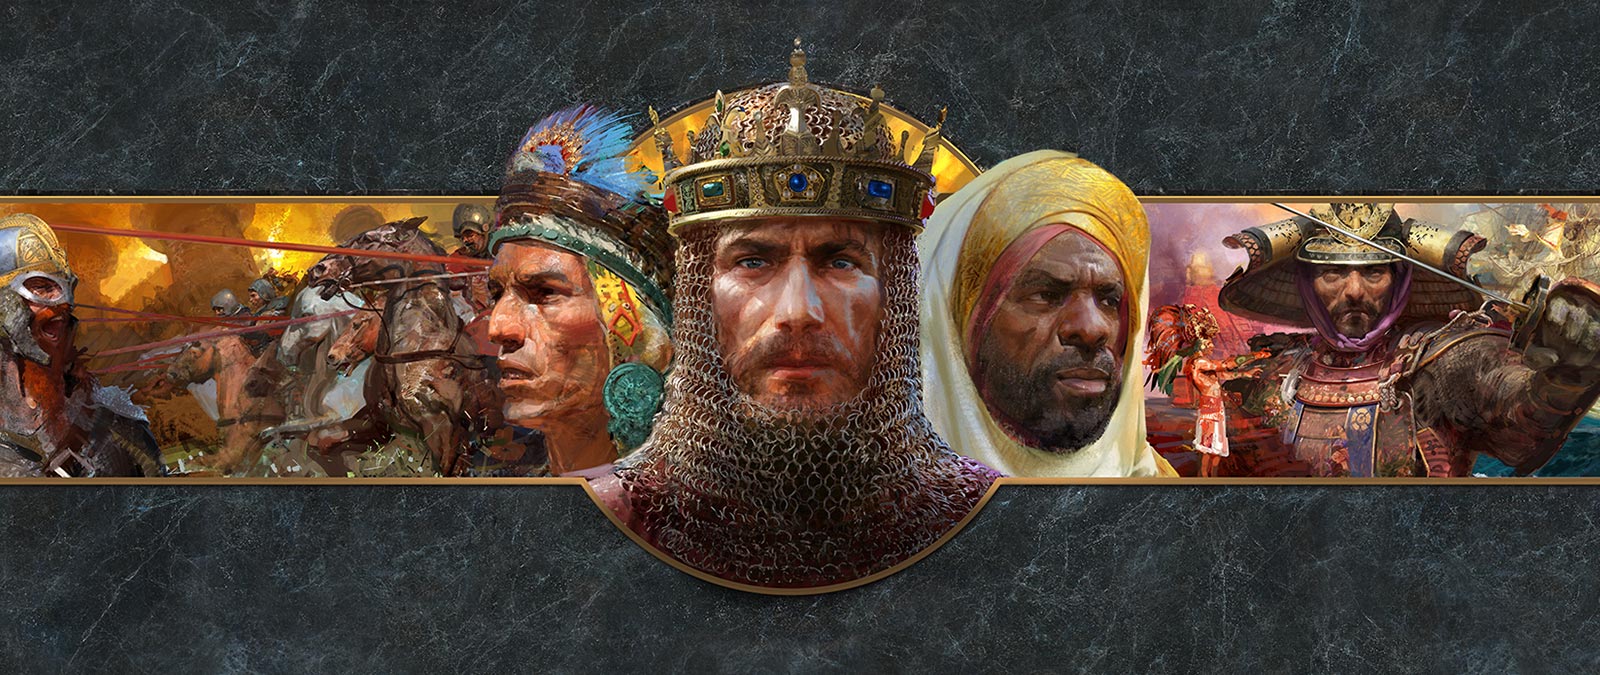 Las imágenes de los rostros de los líderes de diferentes civilizaciones se muestran frente a escenas de batalla.